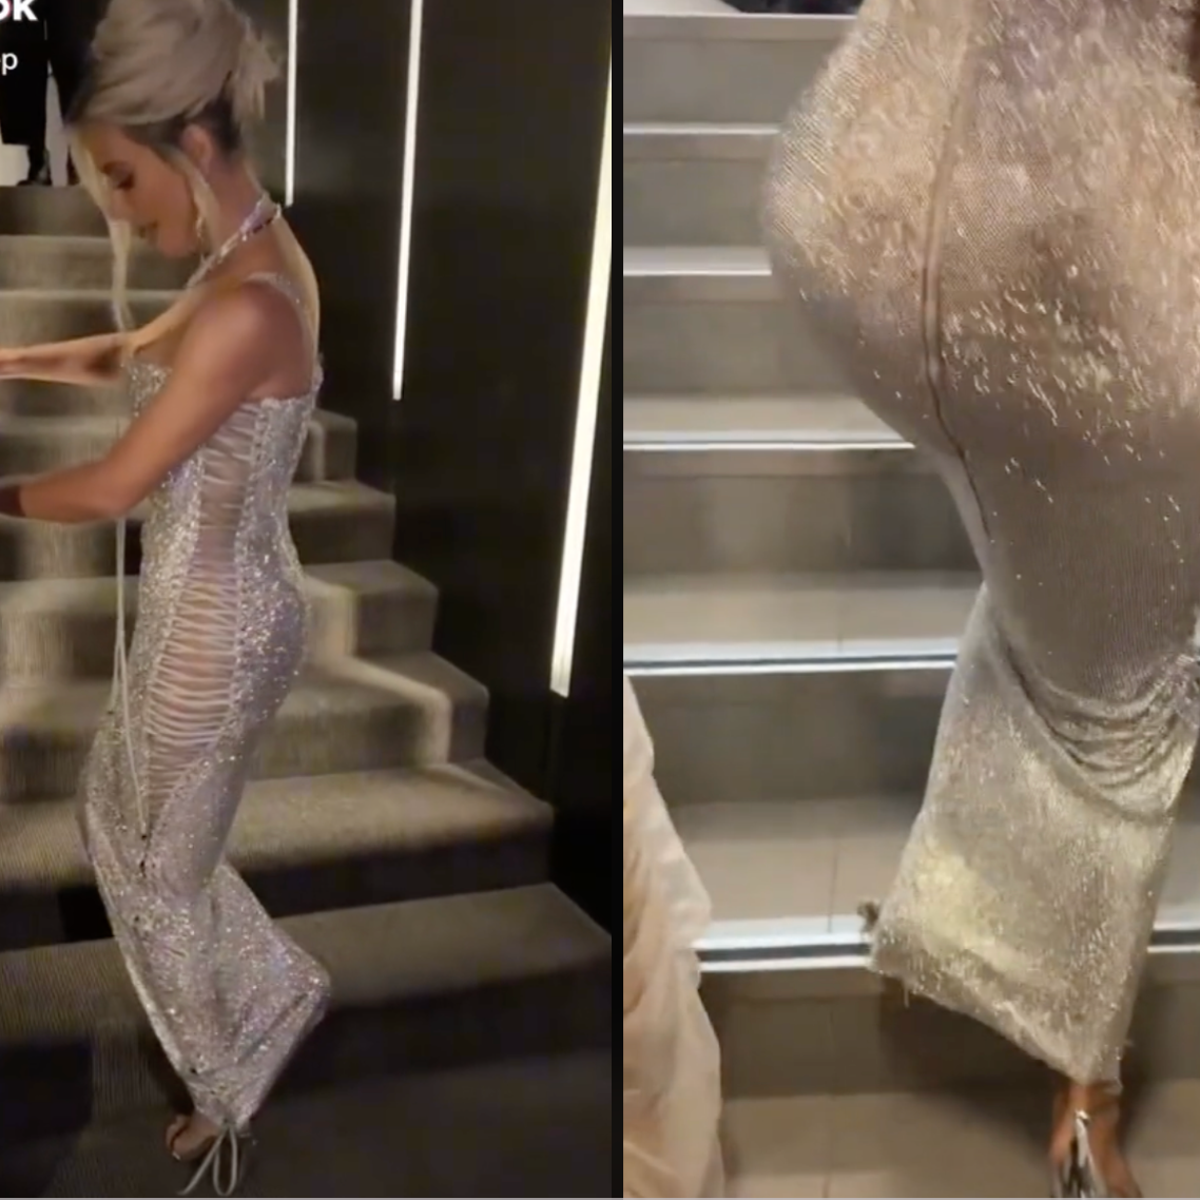 Dolce & Gabbana team up with Kim Kardashian at Milan Fashion Week